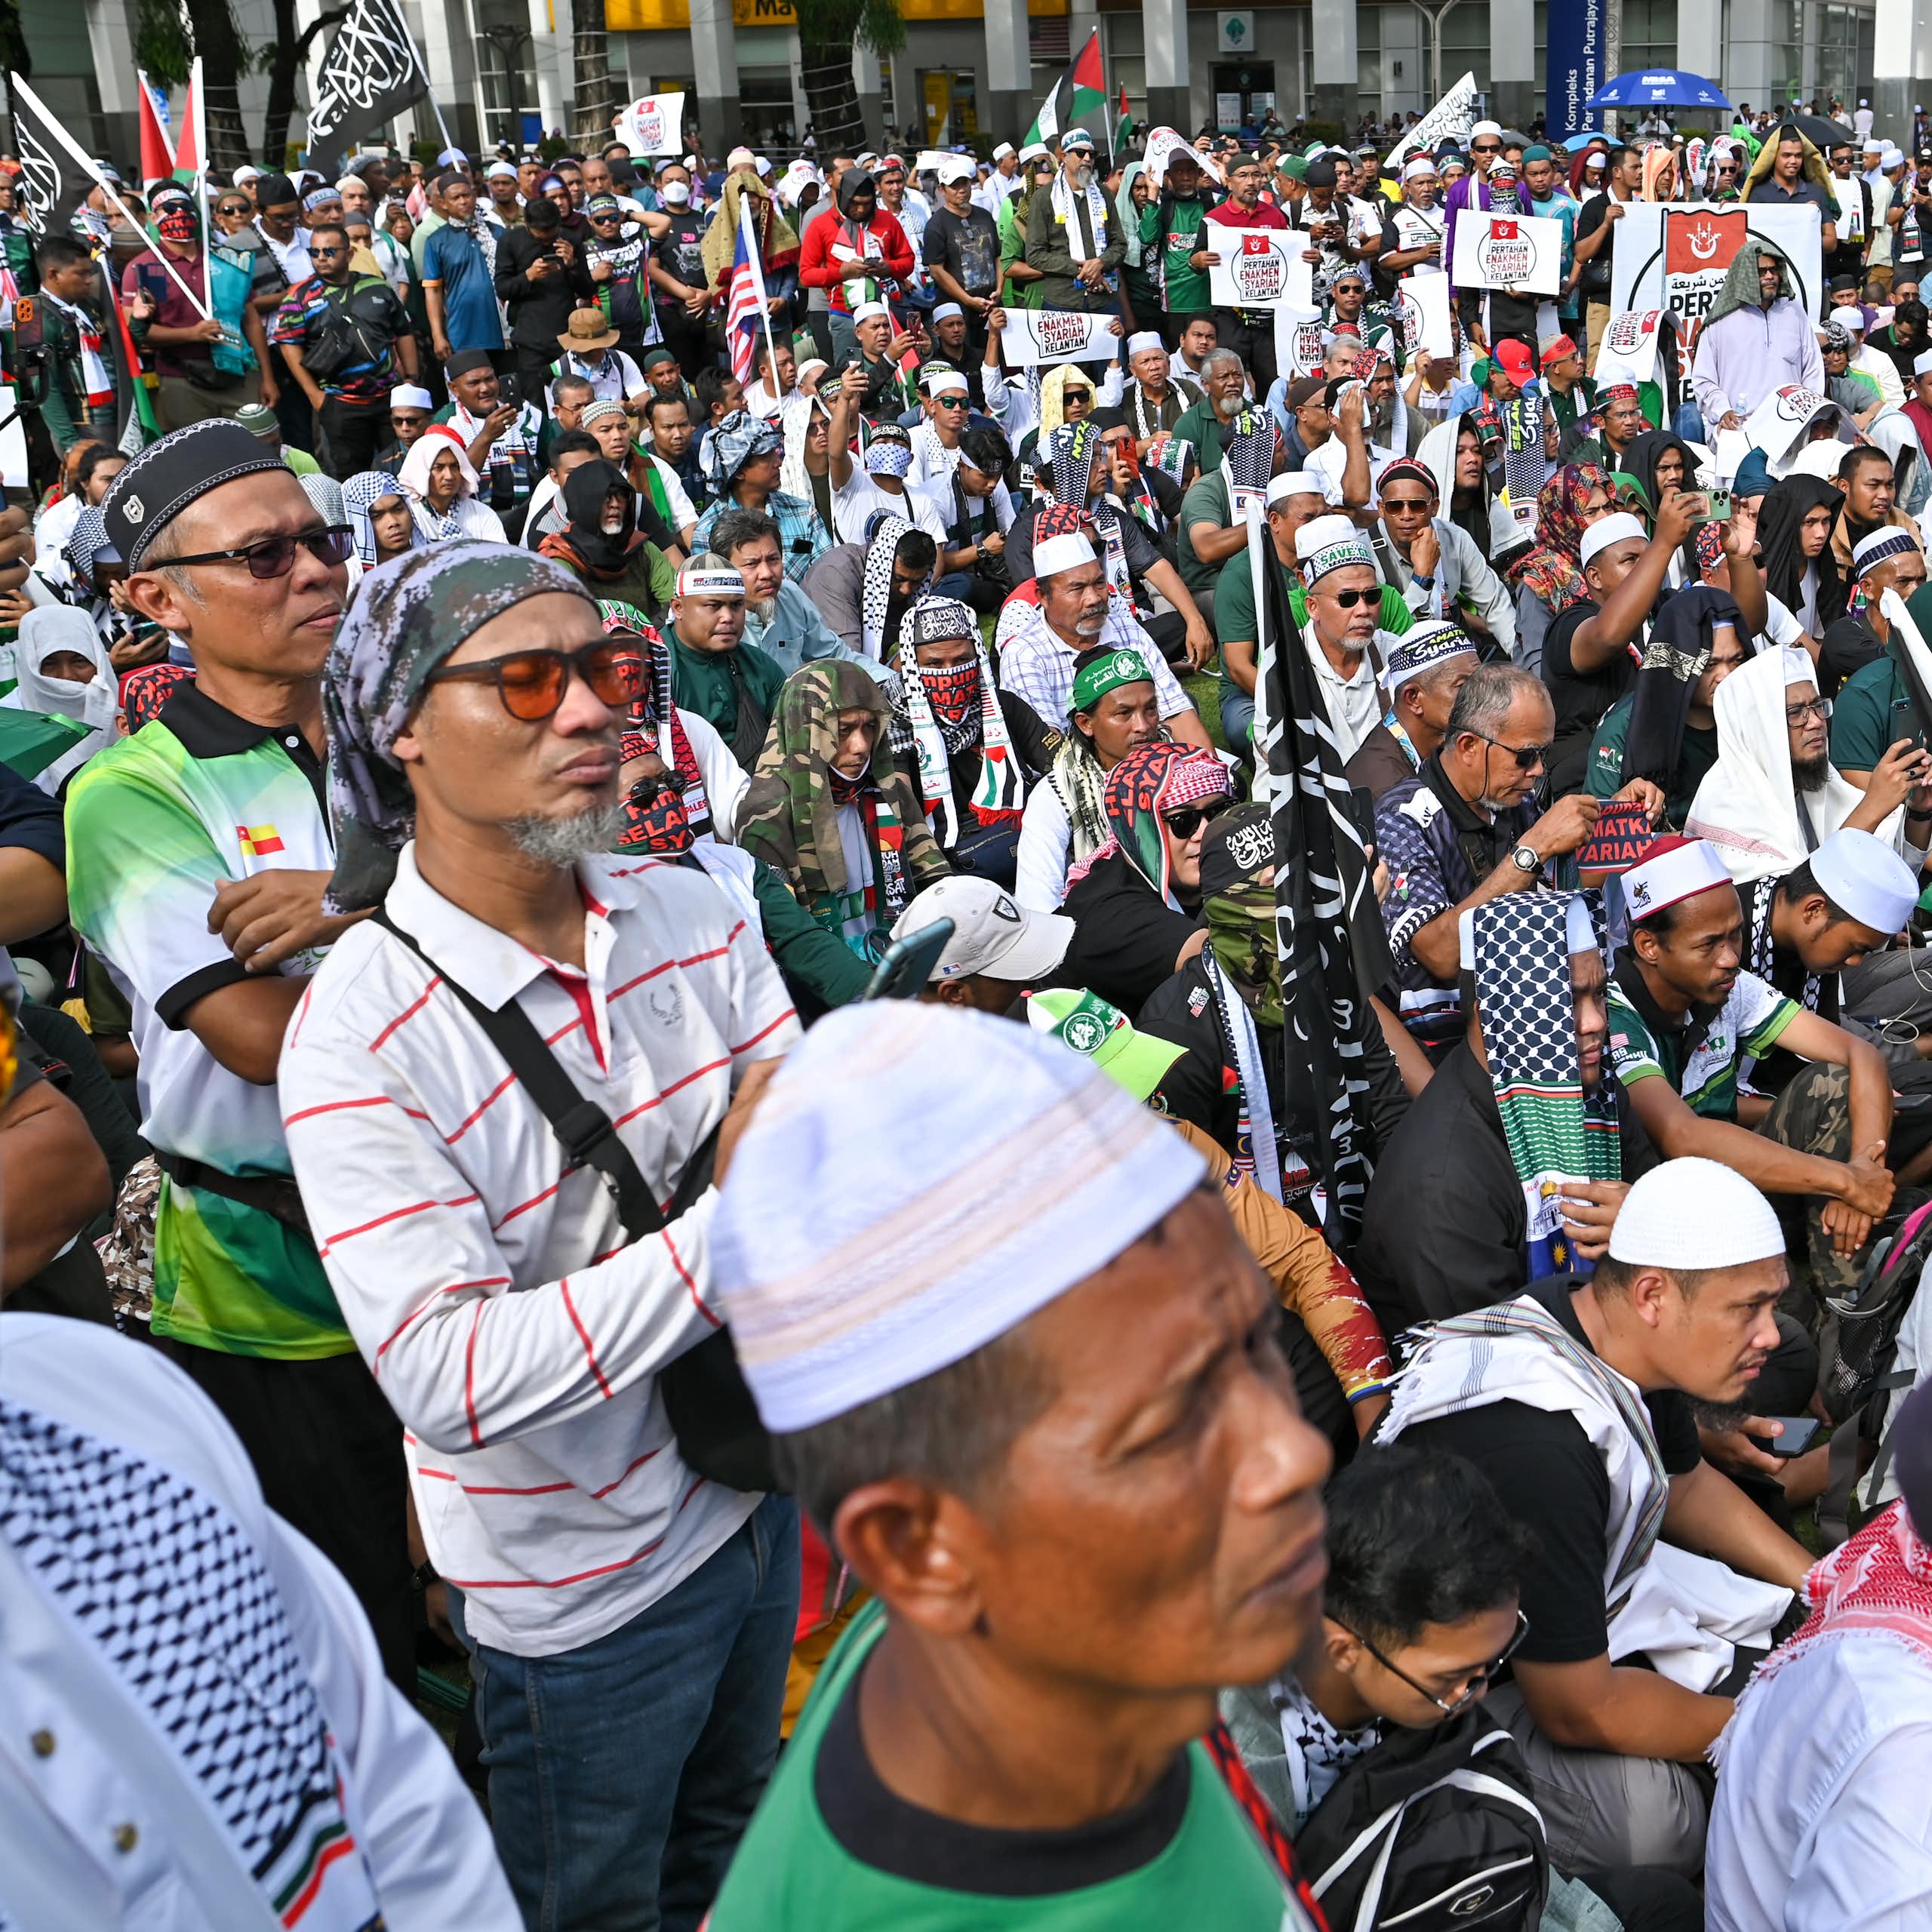 Un grupo de manifestantes, muchos de ellos con tocados islámicos, permanecen de pie y sentados.